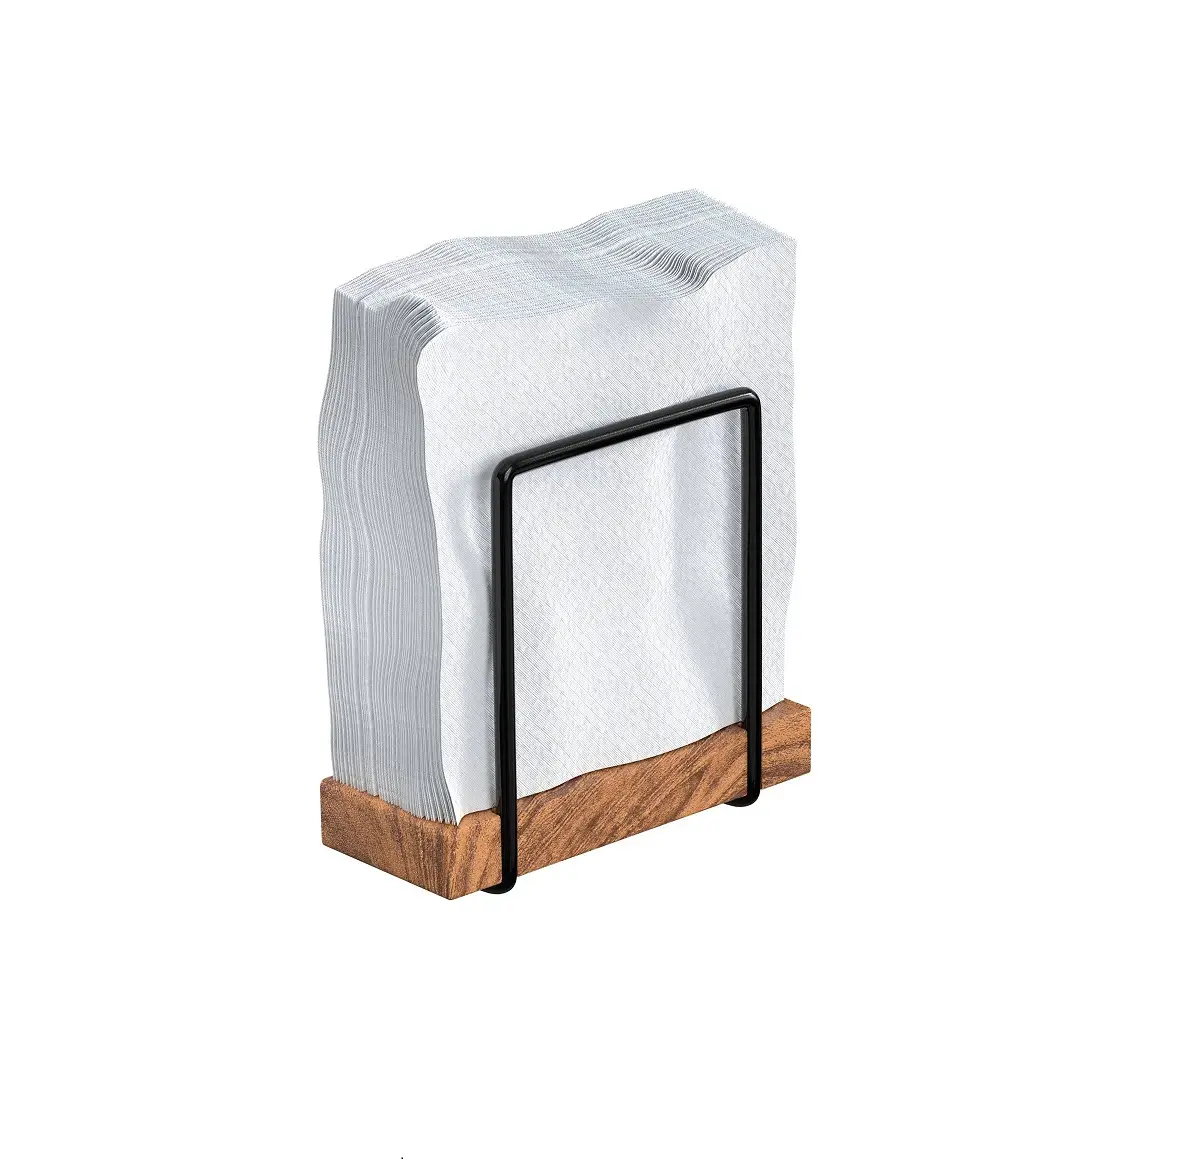 Porte-serviettes de vente tendance avec base en bois support de tissu en fil de métal noir porte-papier pour table à manger